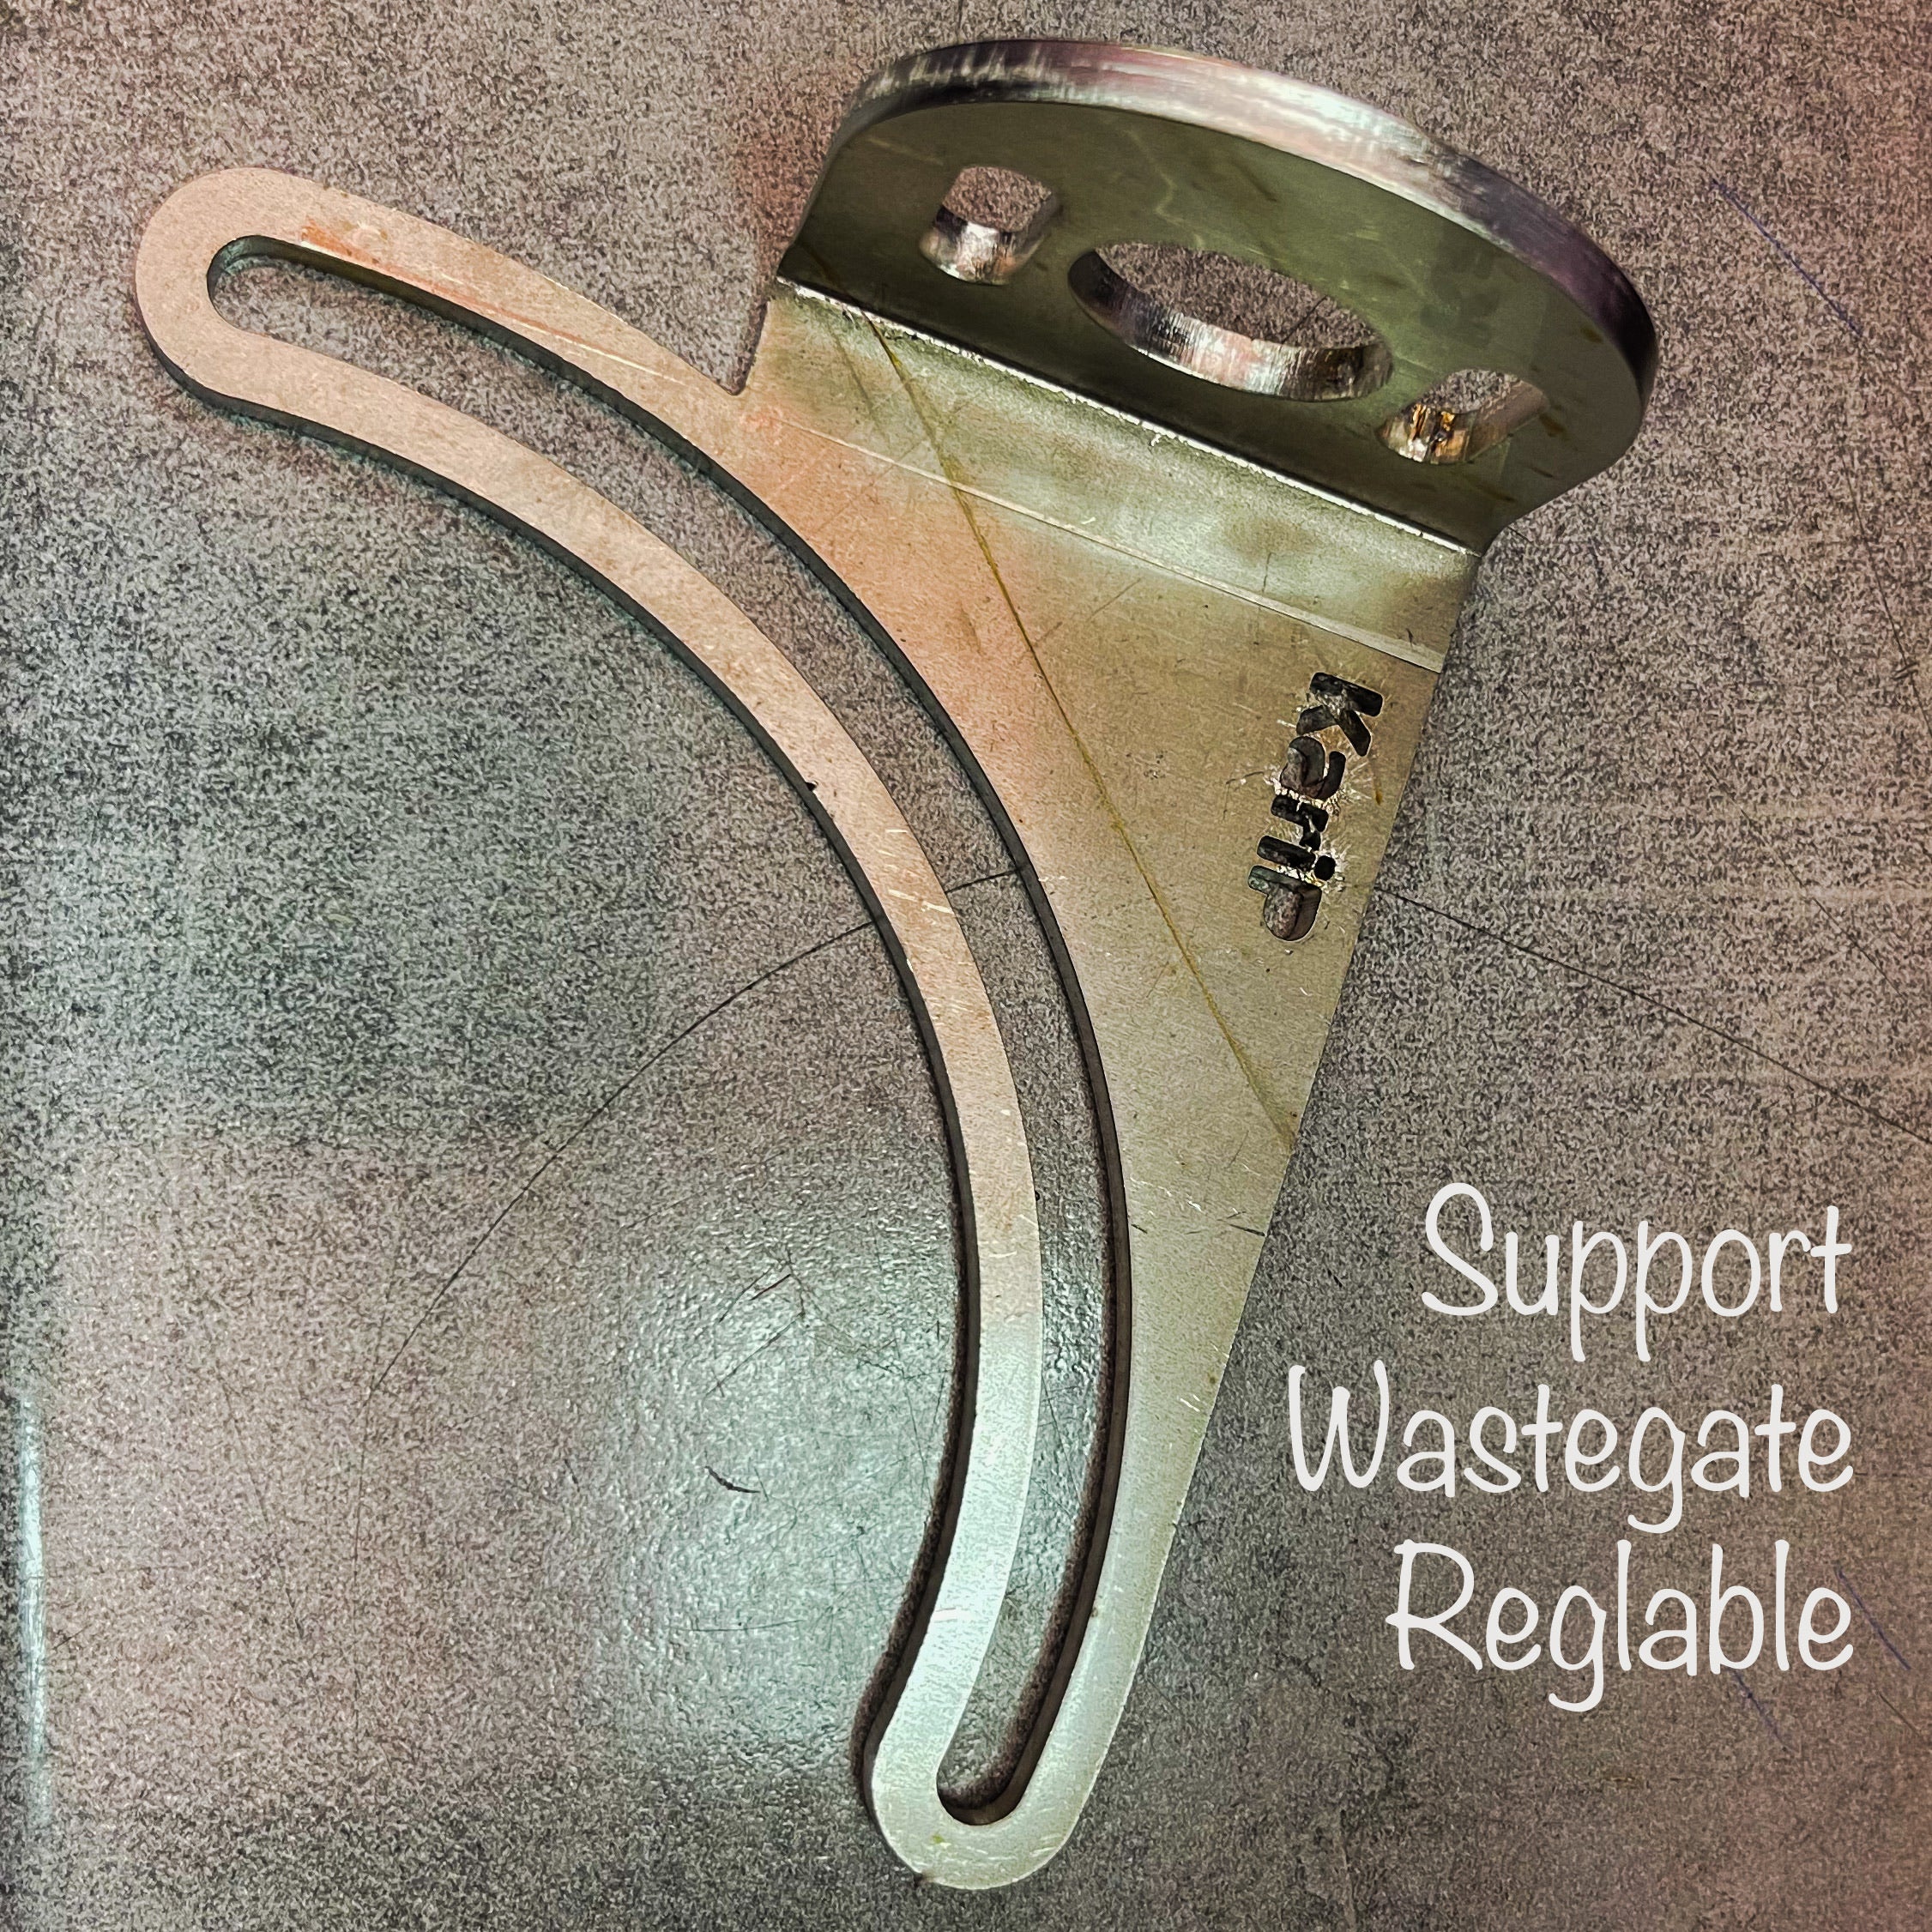 Support Reglable Wastegate